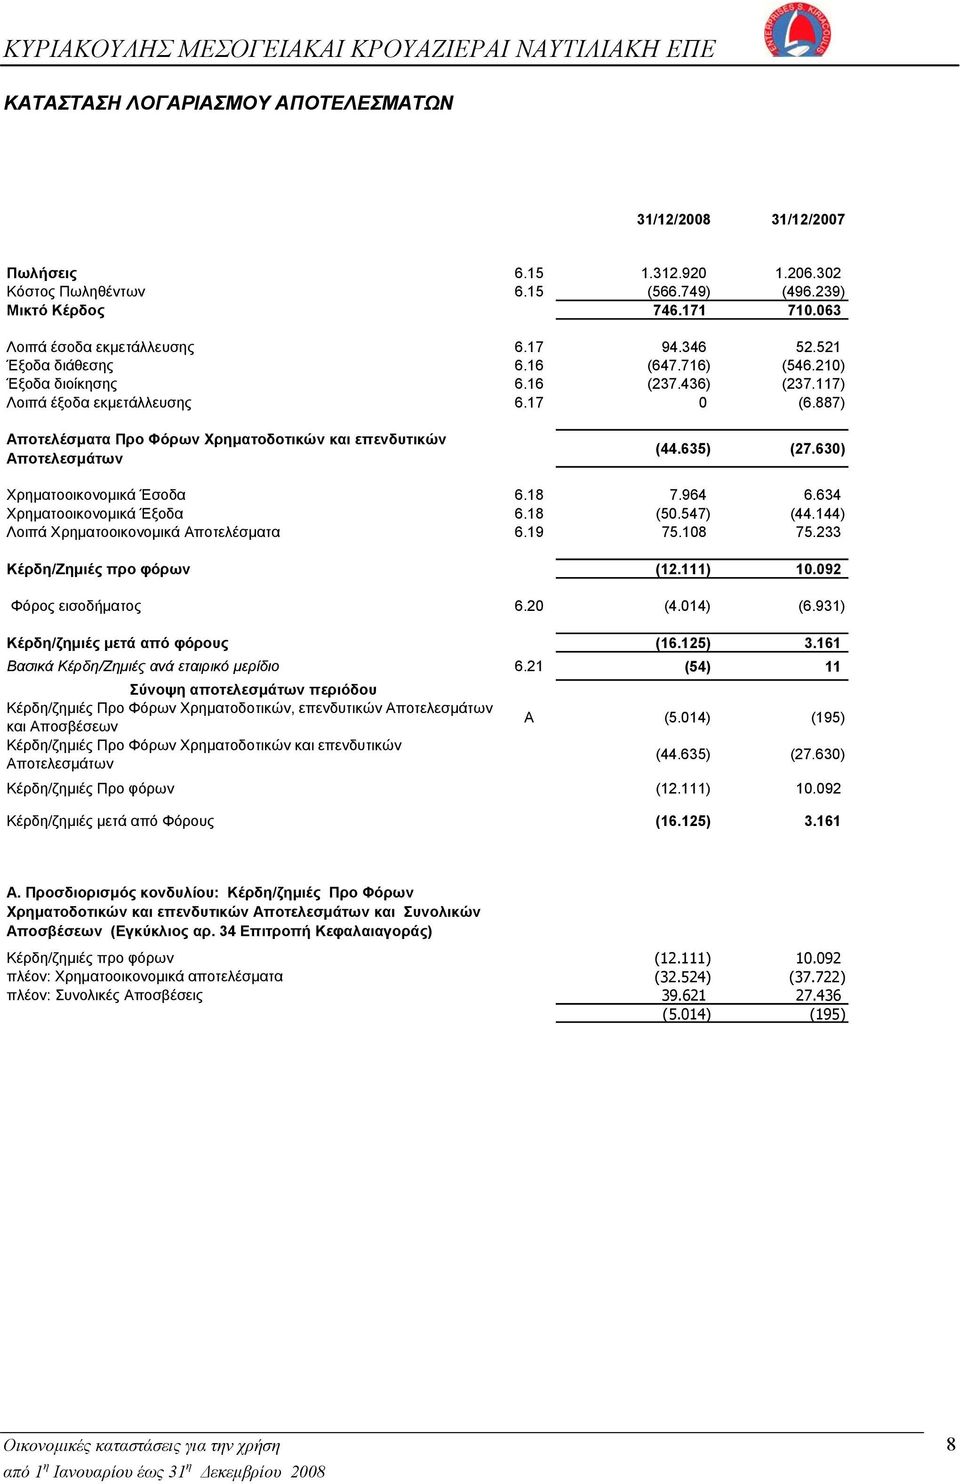 887) Αποτελέσματα Προ Φόρων Χρηματοδοτικών και επενδυτικών Αποτελεσμάτων (44.635) (27.630) Χρηματοοικονομικά Έσοδα 6.18 7.964 6.634 Χρηματοοικονομικά Έξοδα 6.18 (50.547) (44.